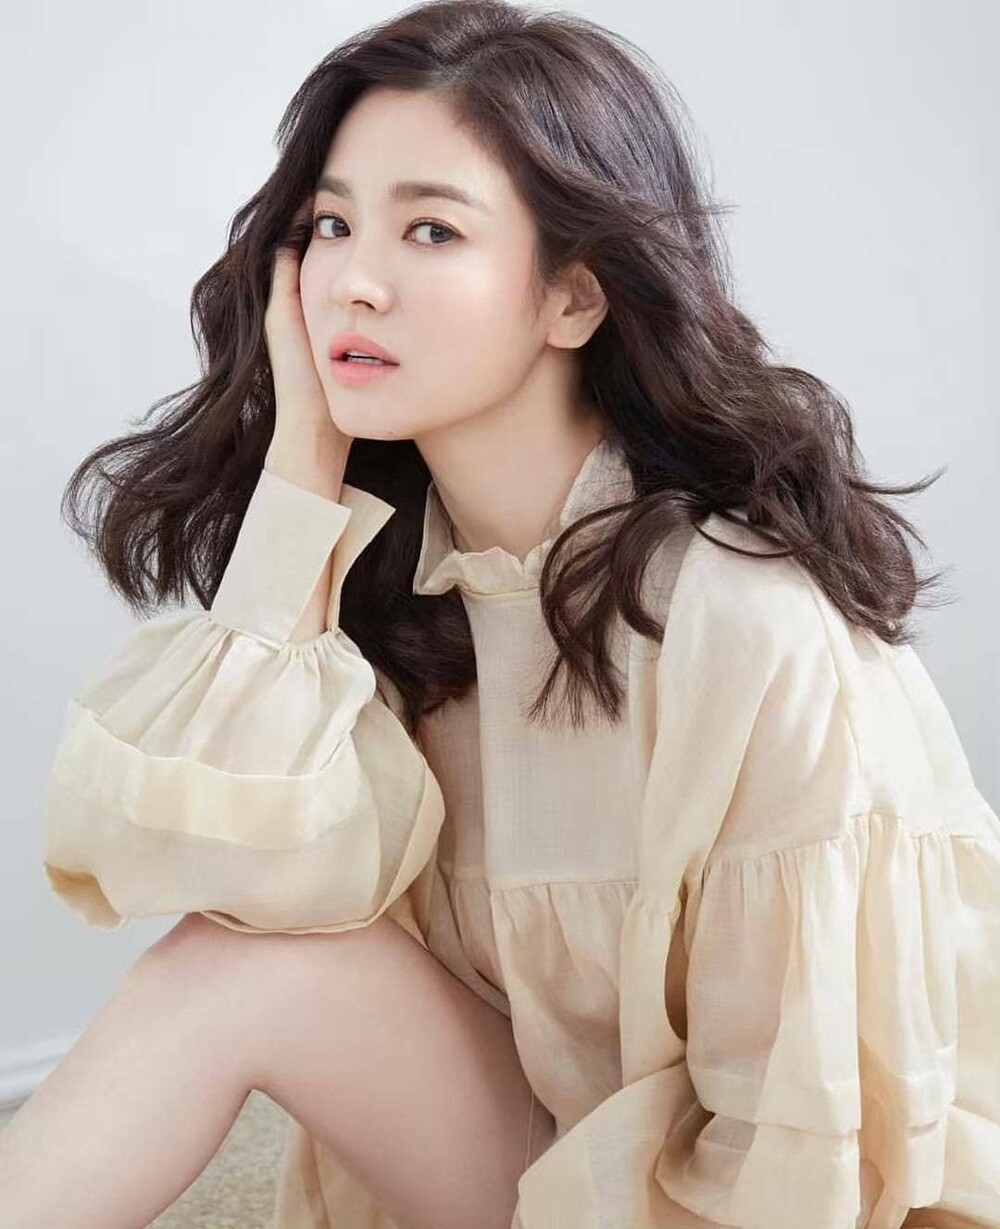 Song Hye Kyo xác nhận tham gia phim mới của biên kịch 'Hậu duệ mặt trời' - Ảnh 2